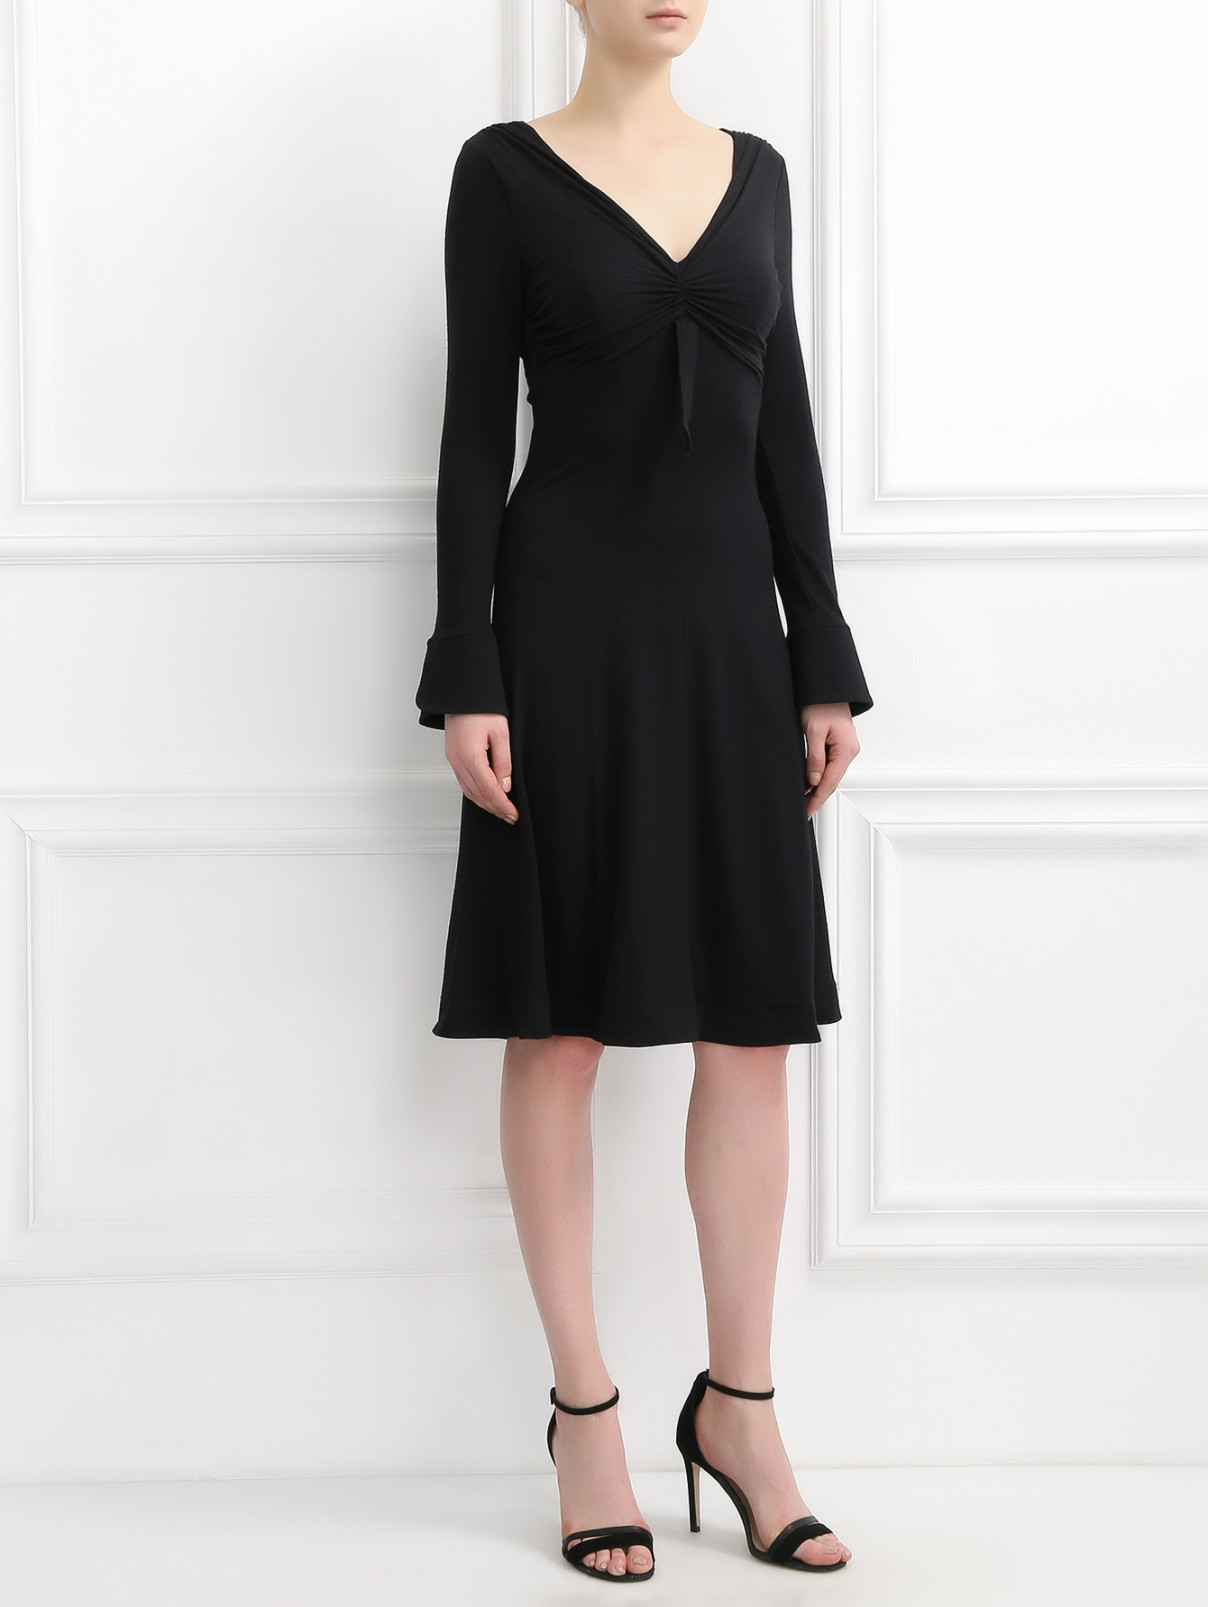 Платье из шерсти, кашемира и шелка Mariella Burani  –  Модель Общий вид  – Цвет:  Черный